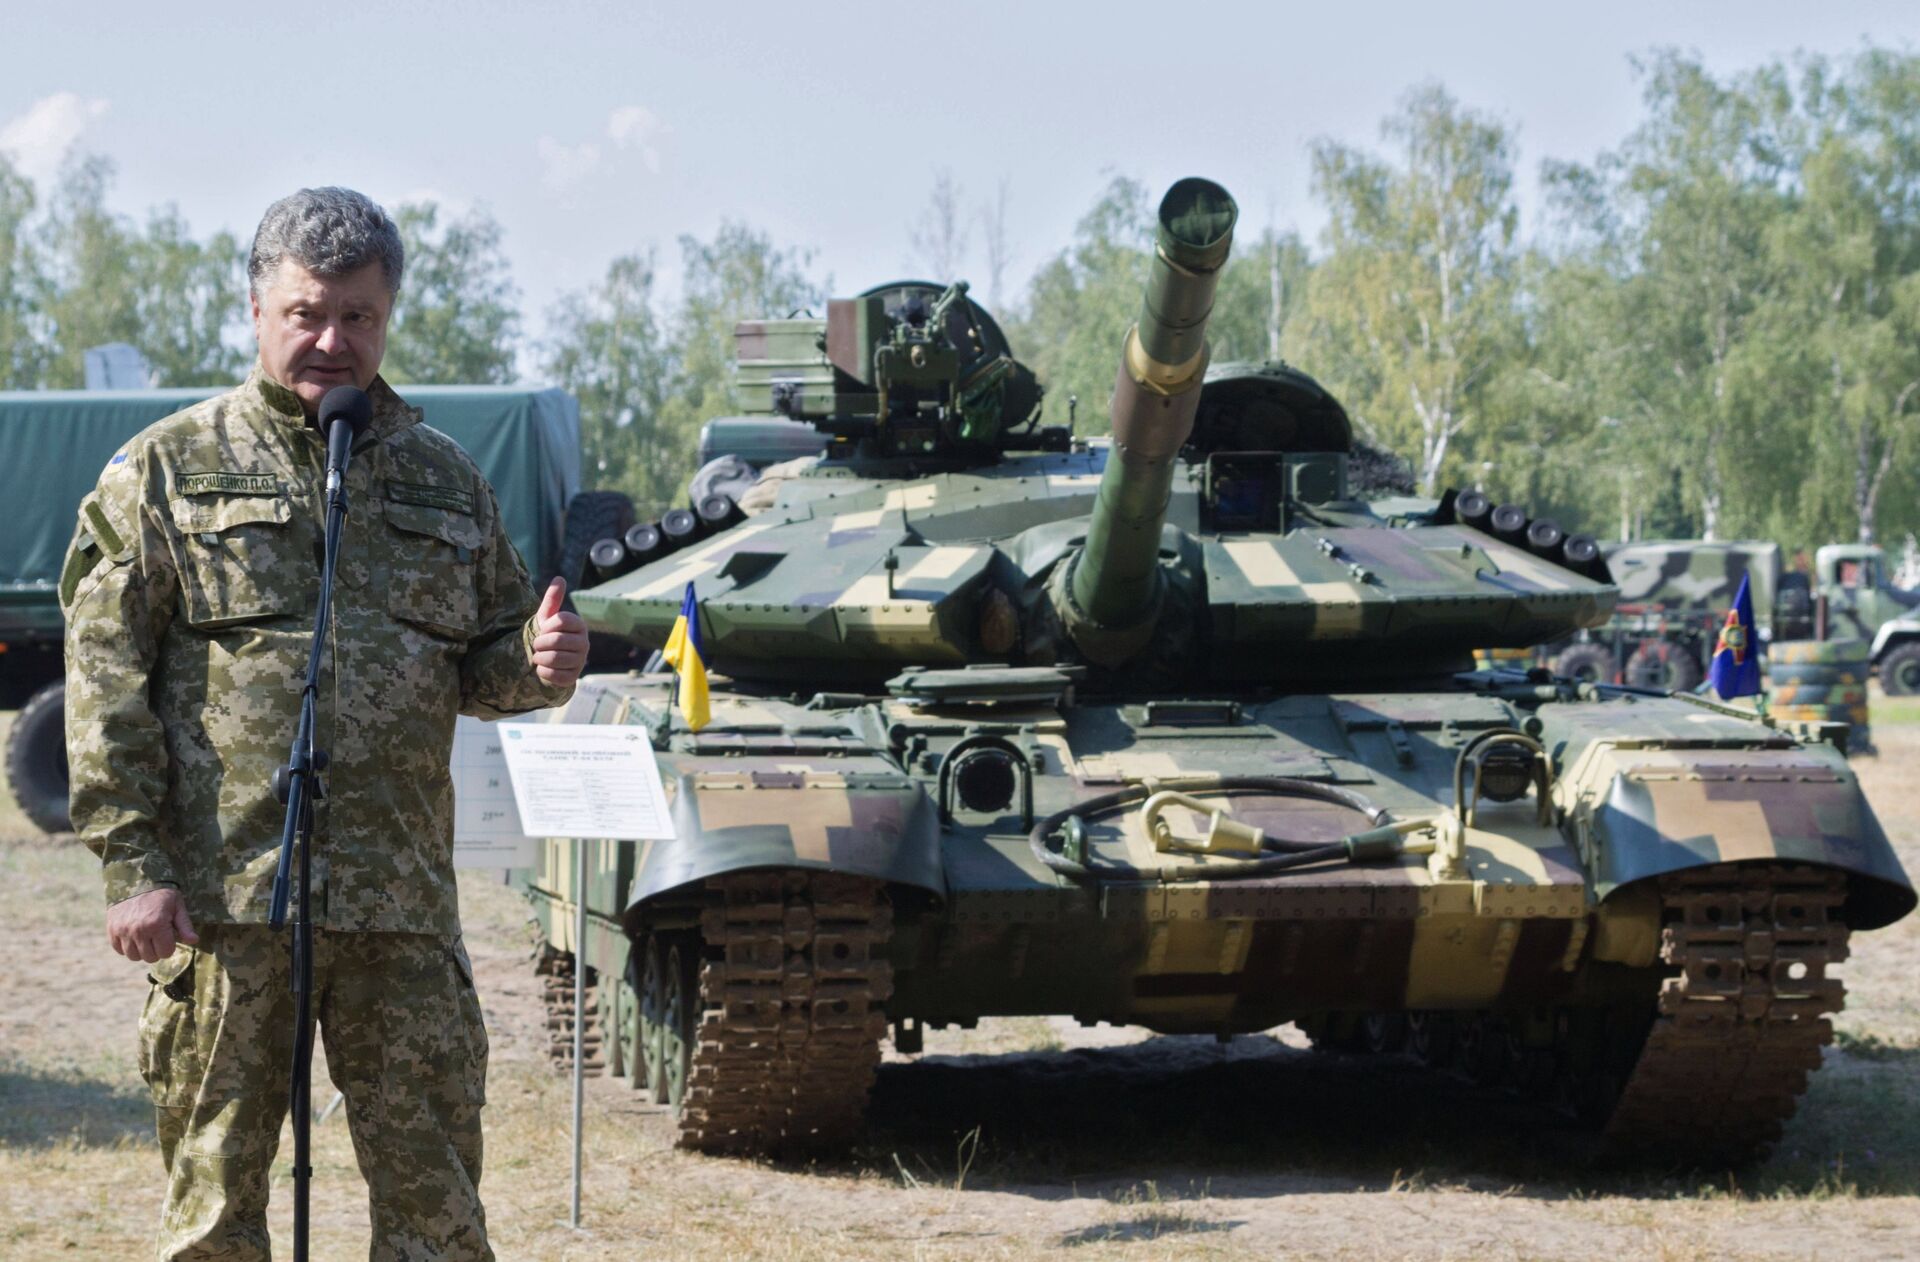 Петр Порошенко посетил Первую оперативную бригаду Национальной гвардии под Киевом - РИА Новости, 1920, 04.10.2017